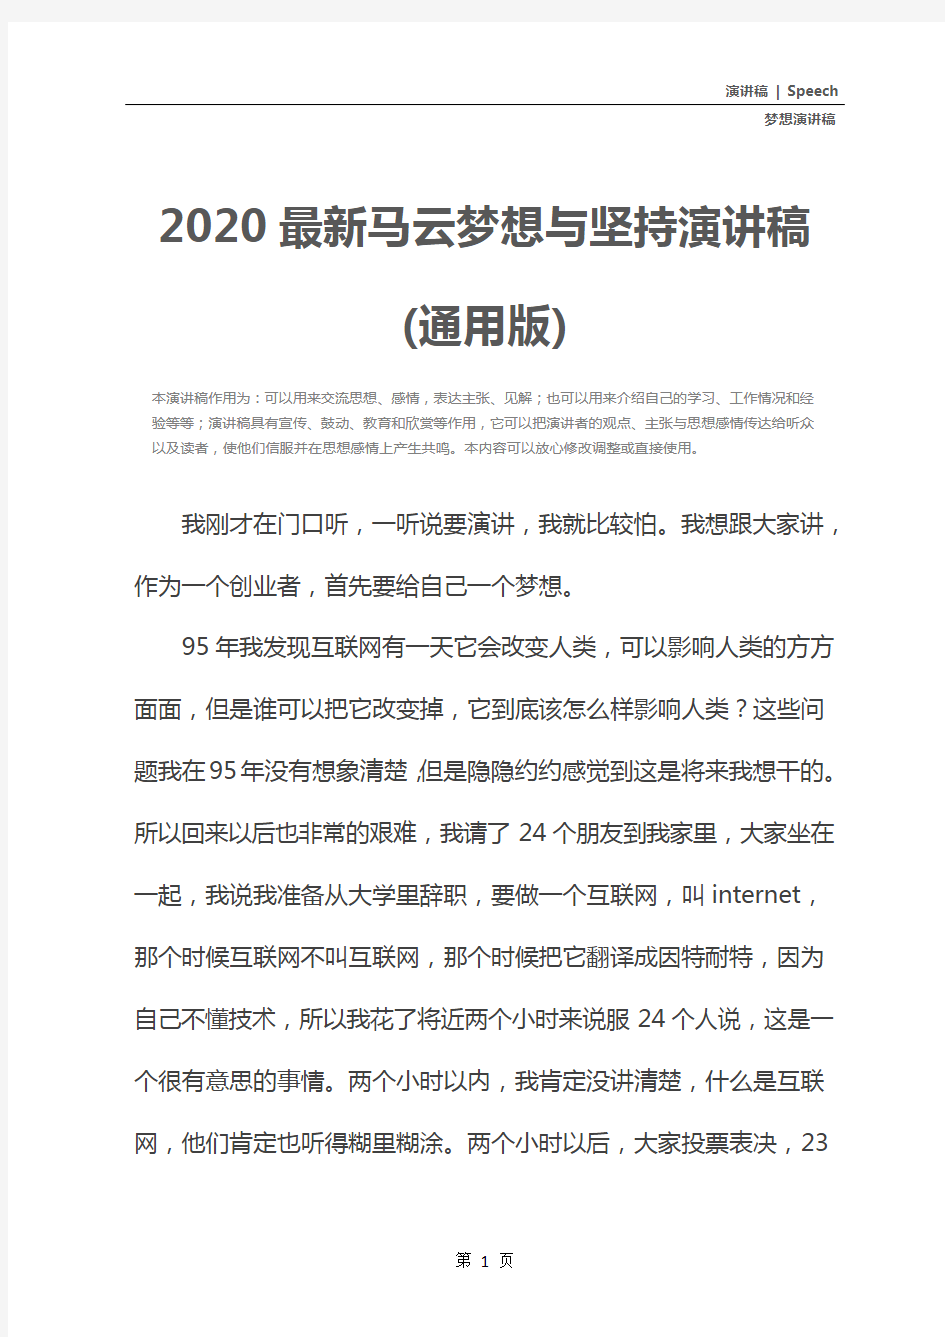 2020最新马云梦想与坚持演讲稿(通用版)